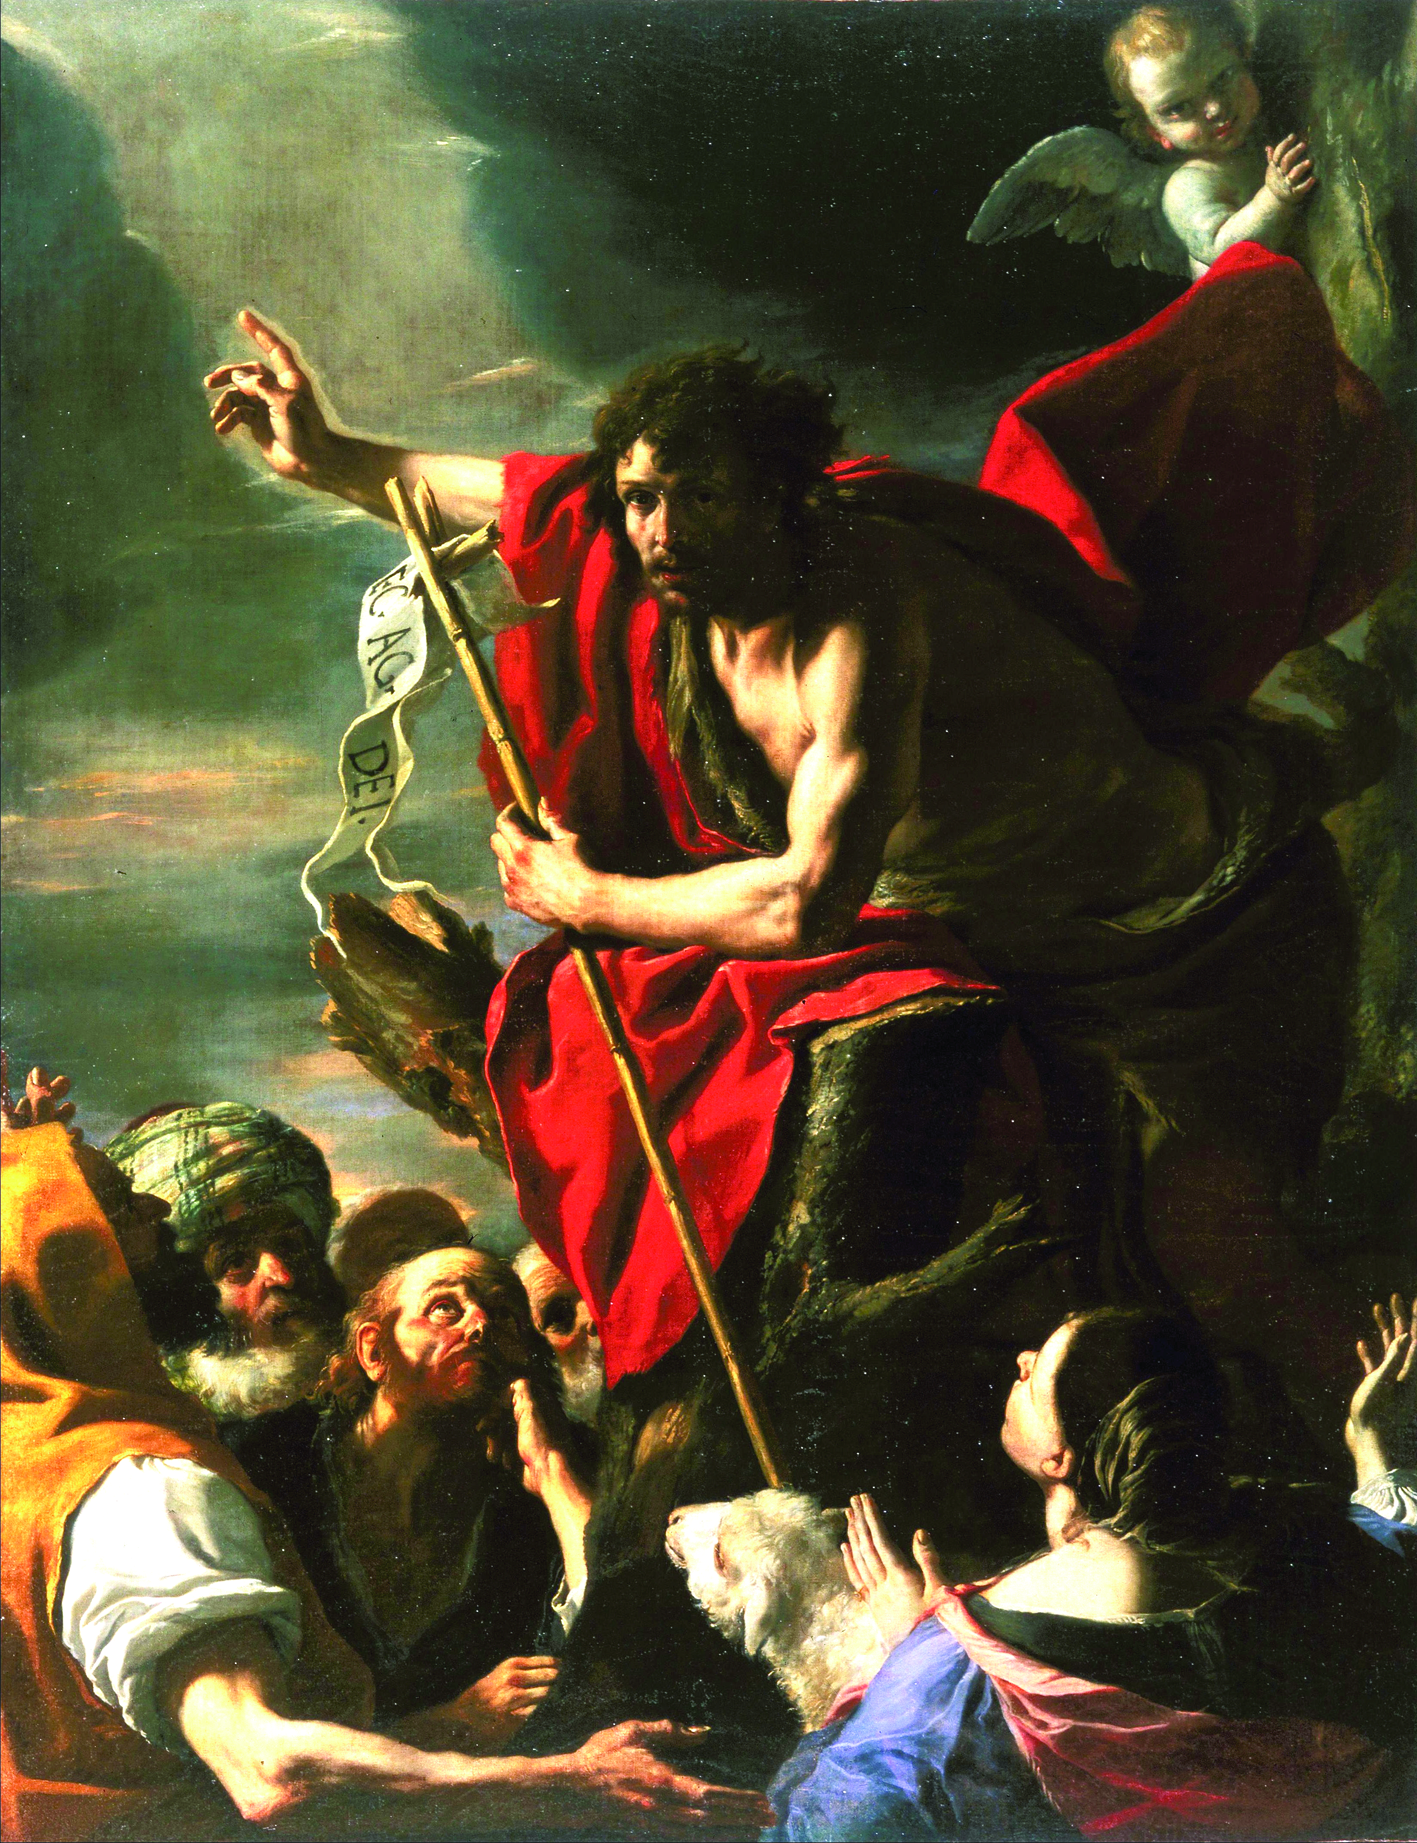 June 24: Feast of St. John the Baptist